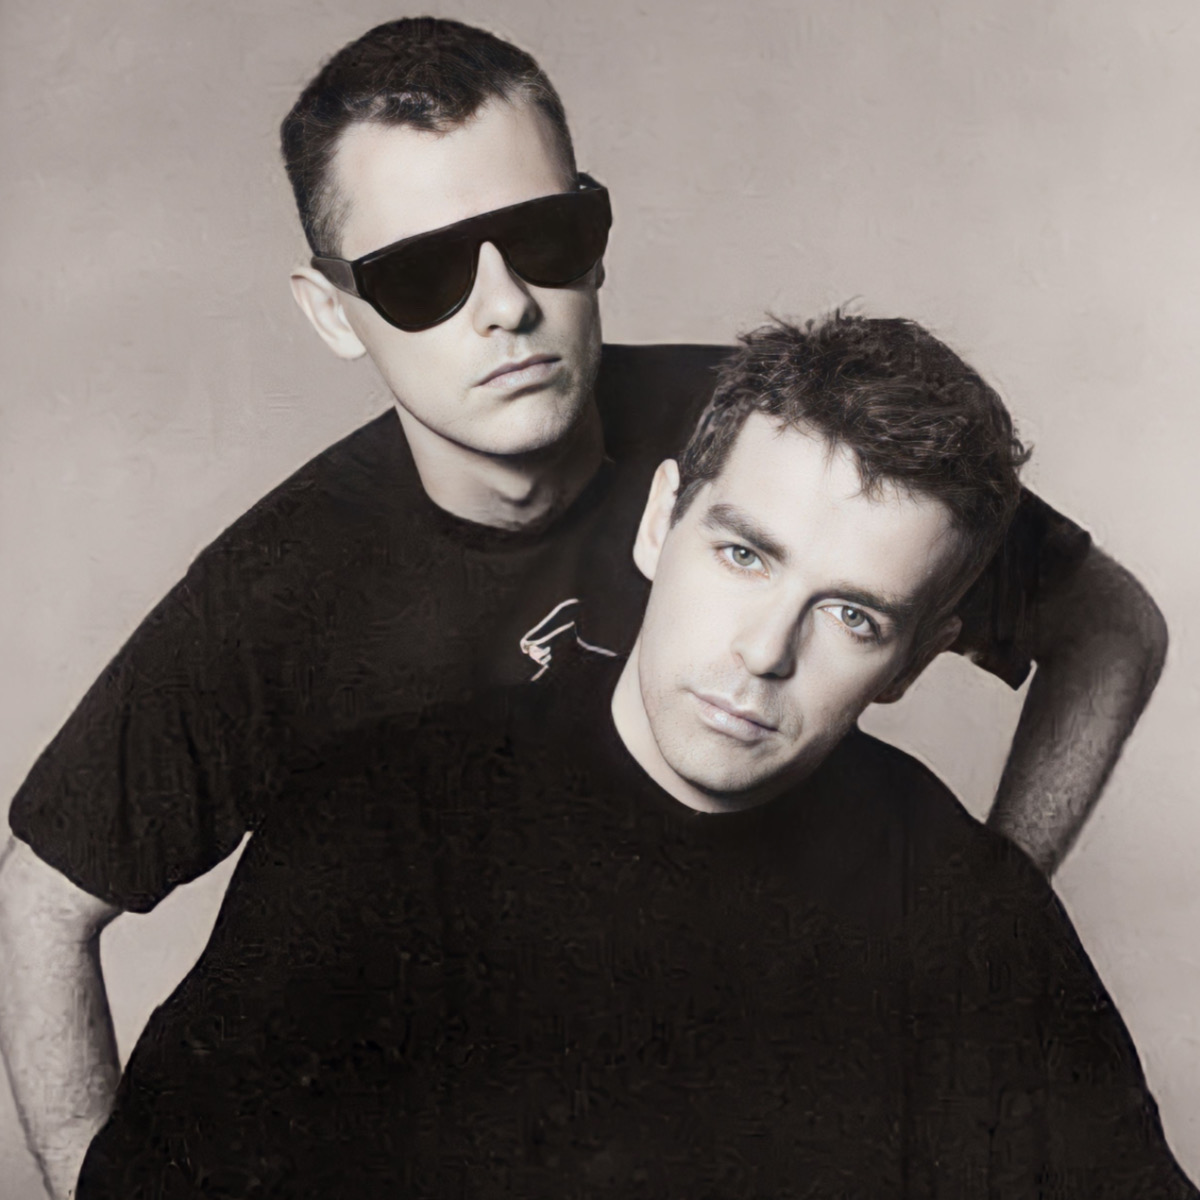 Membros do Pet Shop Boys, Chris Lowe e Neil Tennant